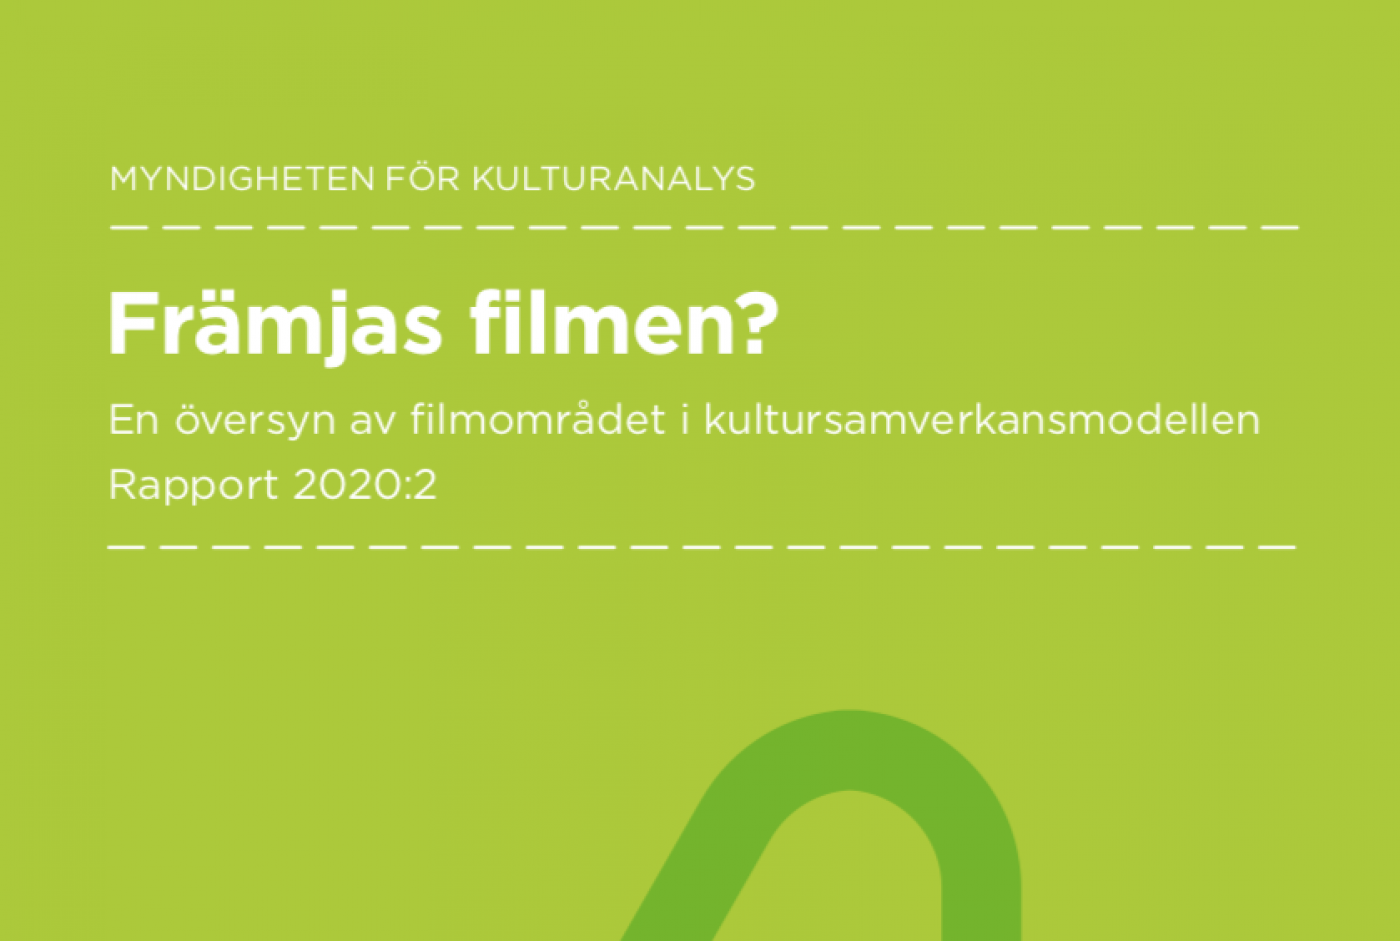 Kulturanalys rapport "Främjas filmen?" är publicerad!